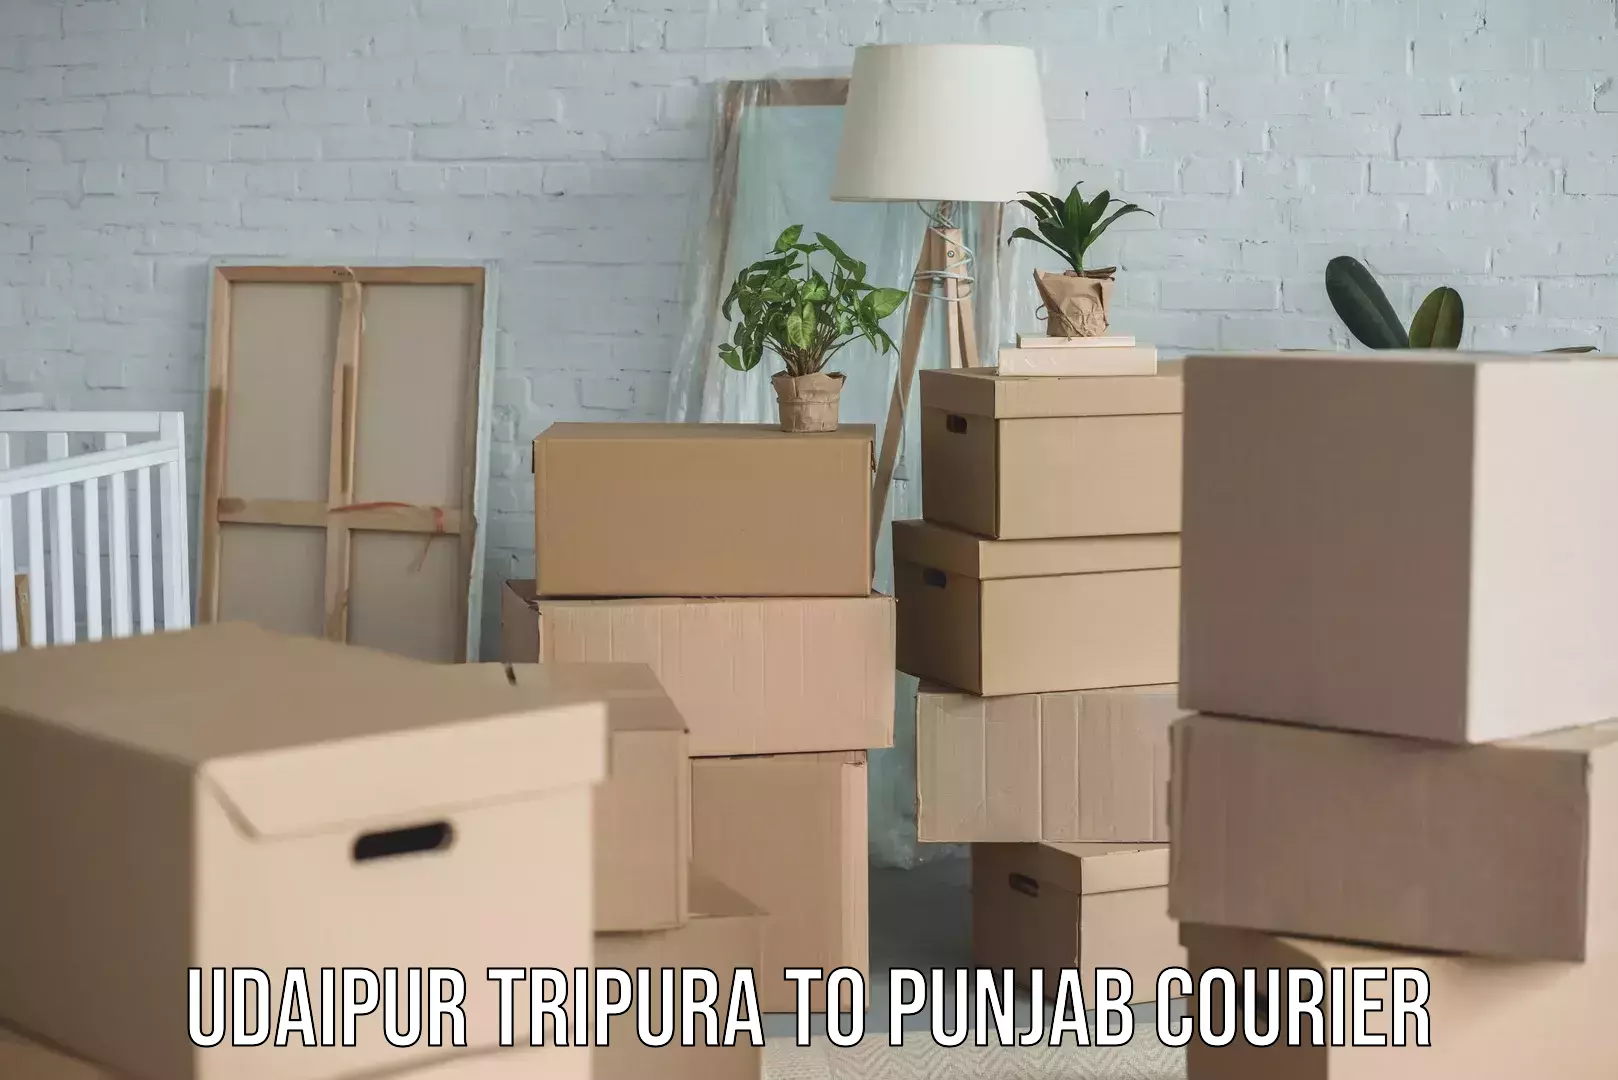 International shipping rates Udaipur Tripura to Punjab